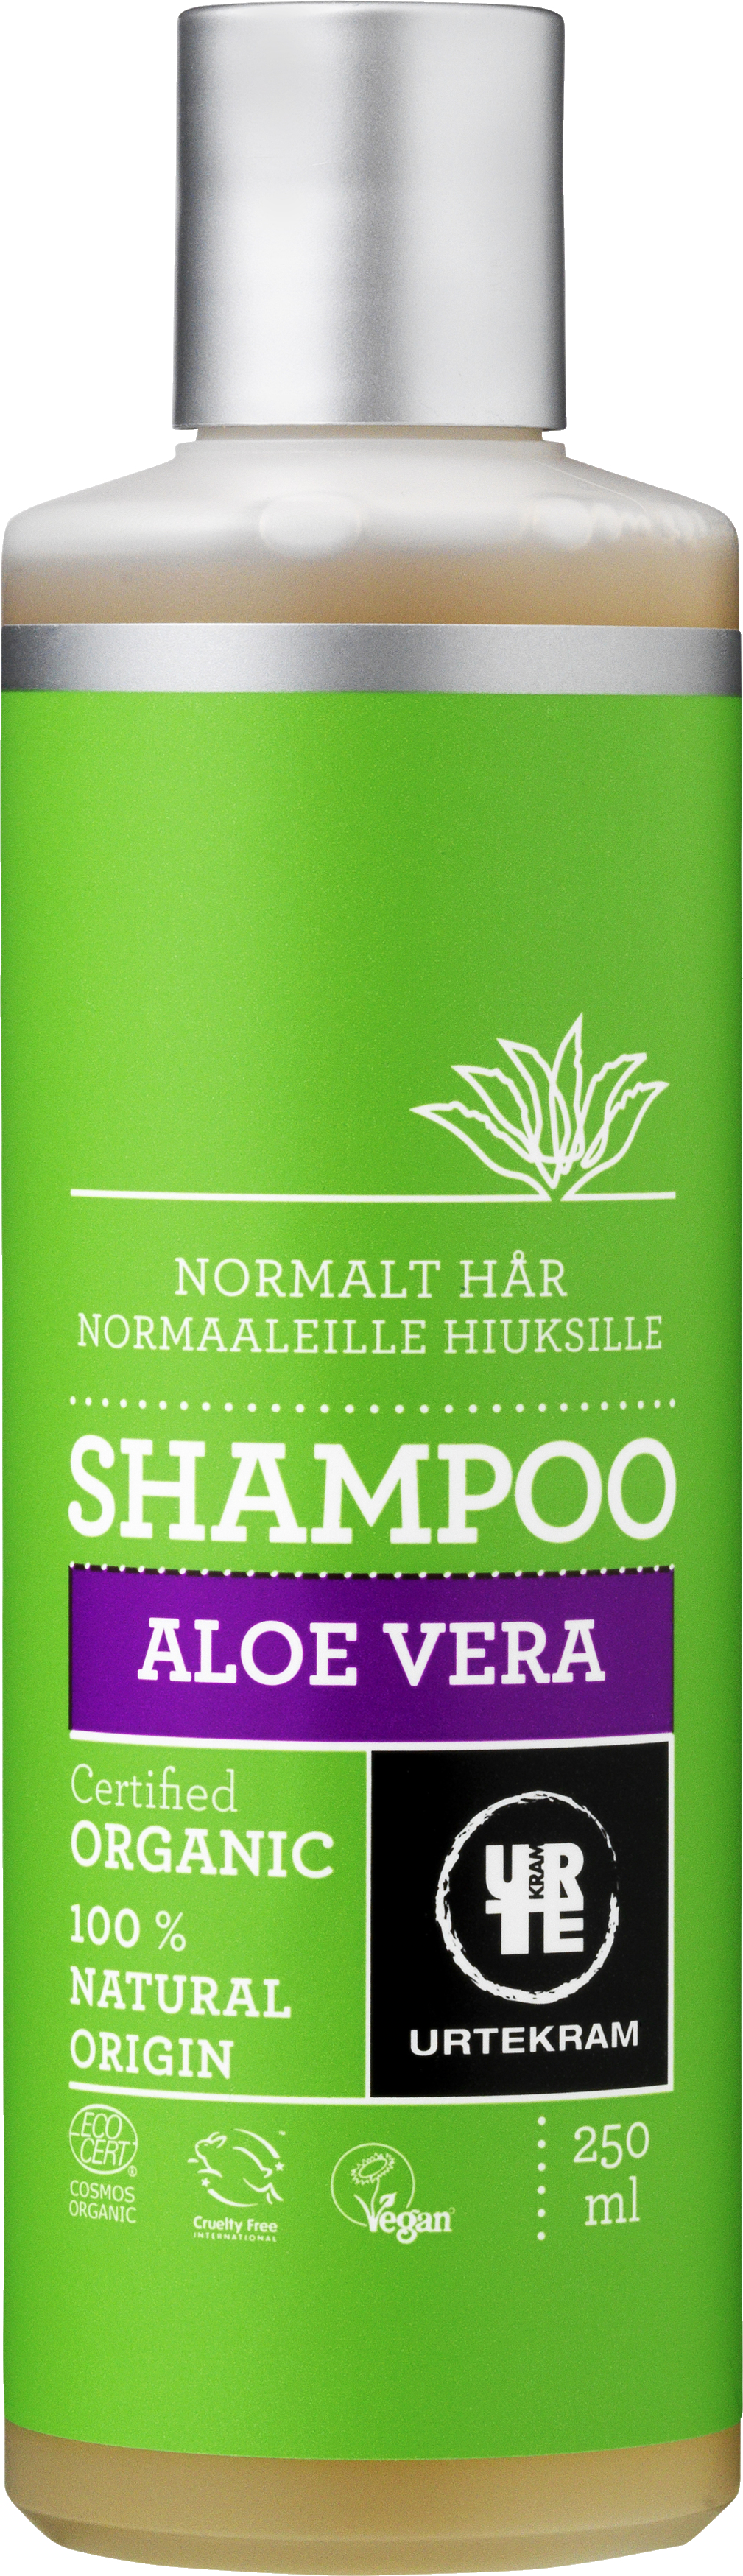 Urtekram Shampoo Aloe Normal 250 ml. PERSONLIG - VIN MED MERE .DK